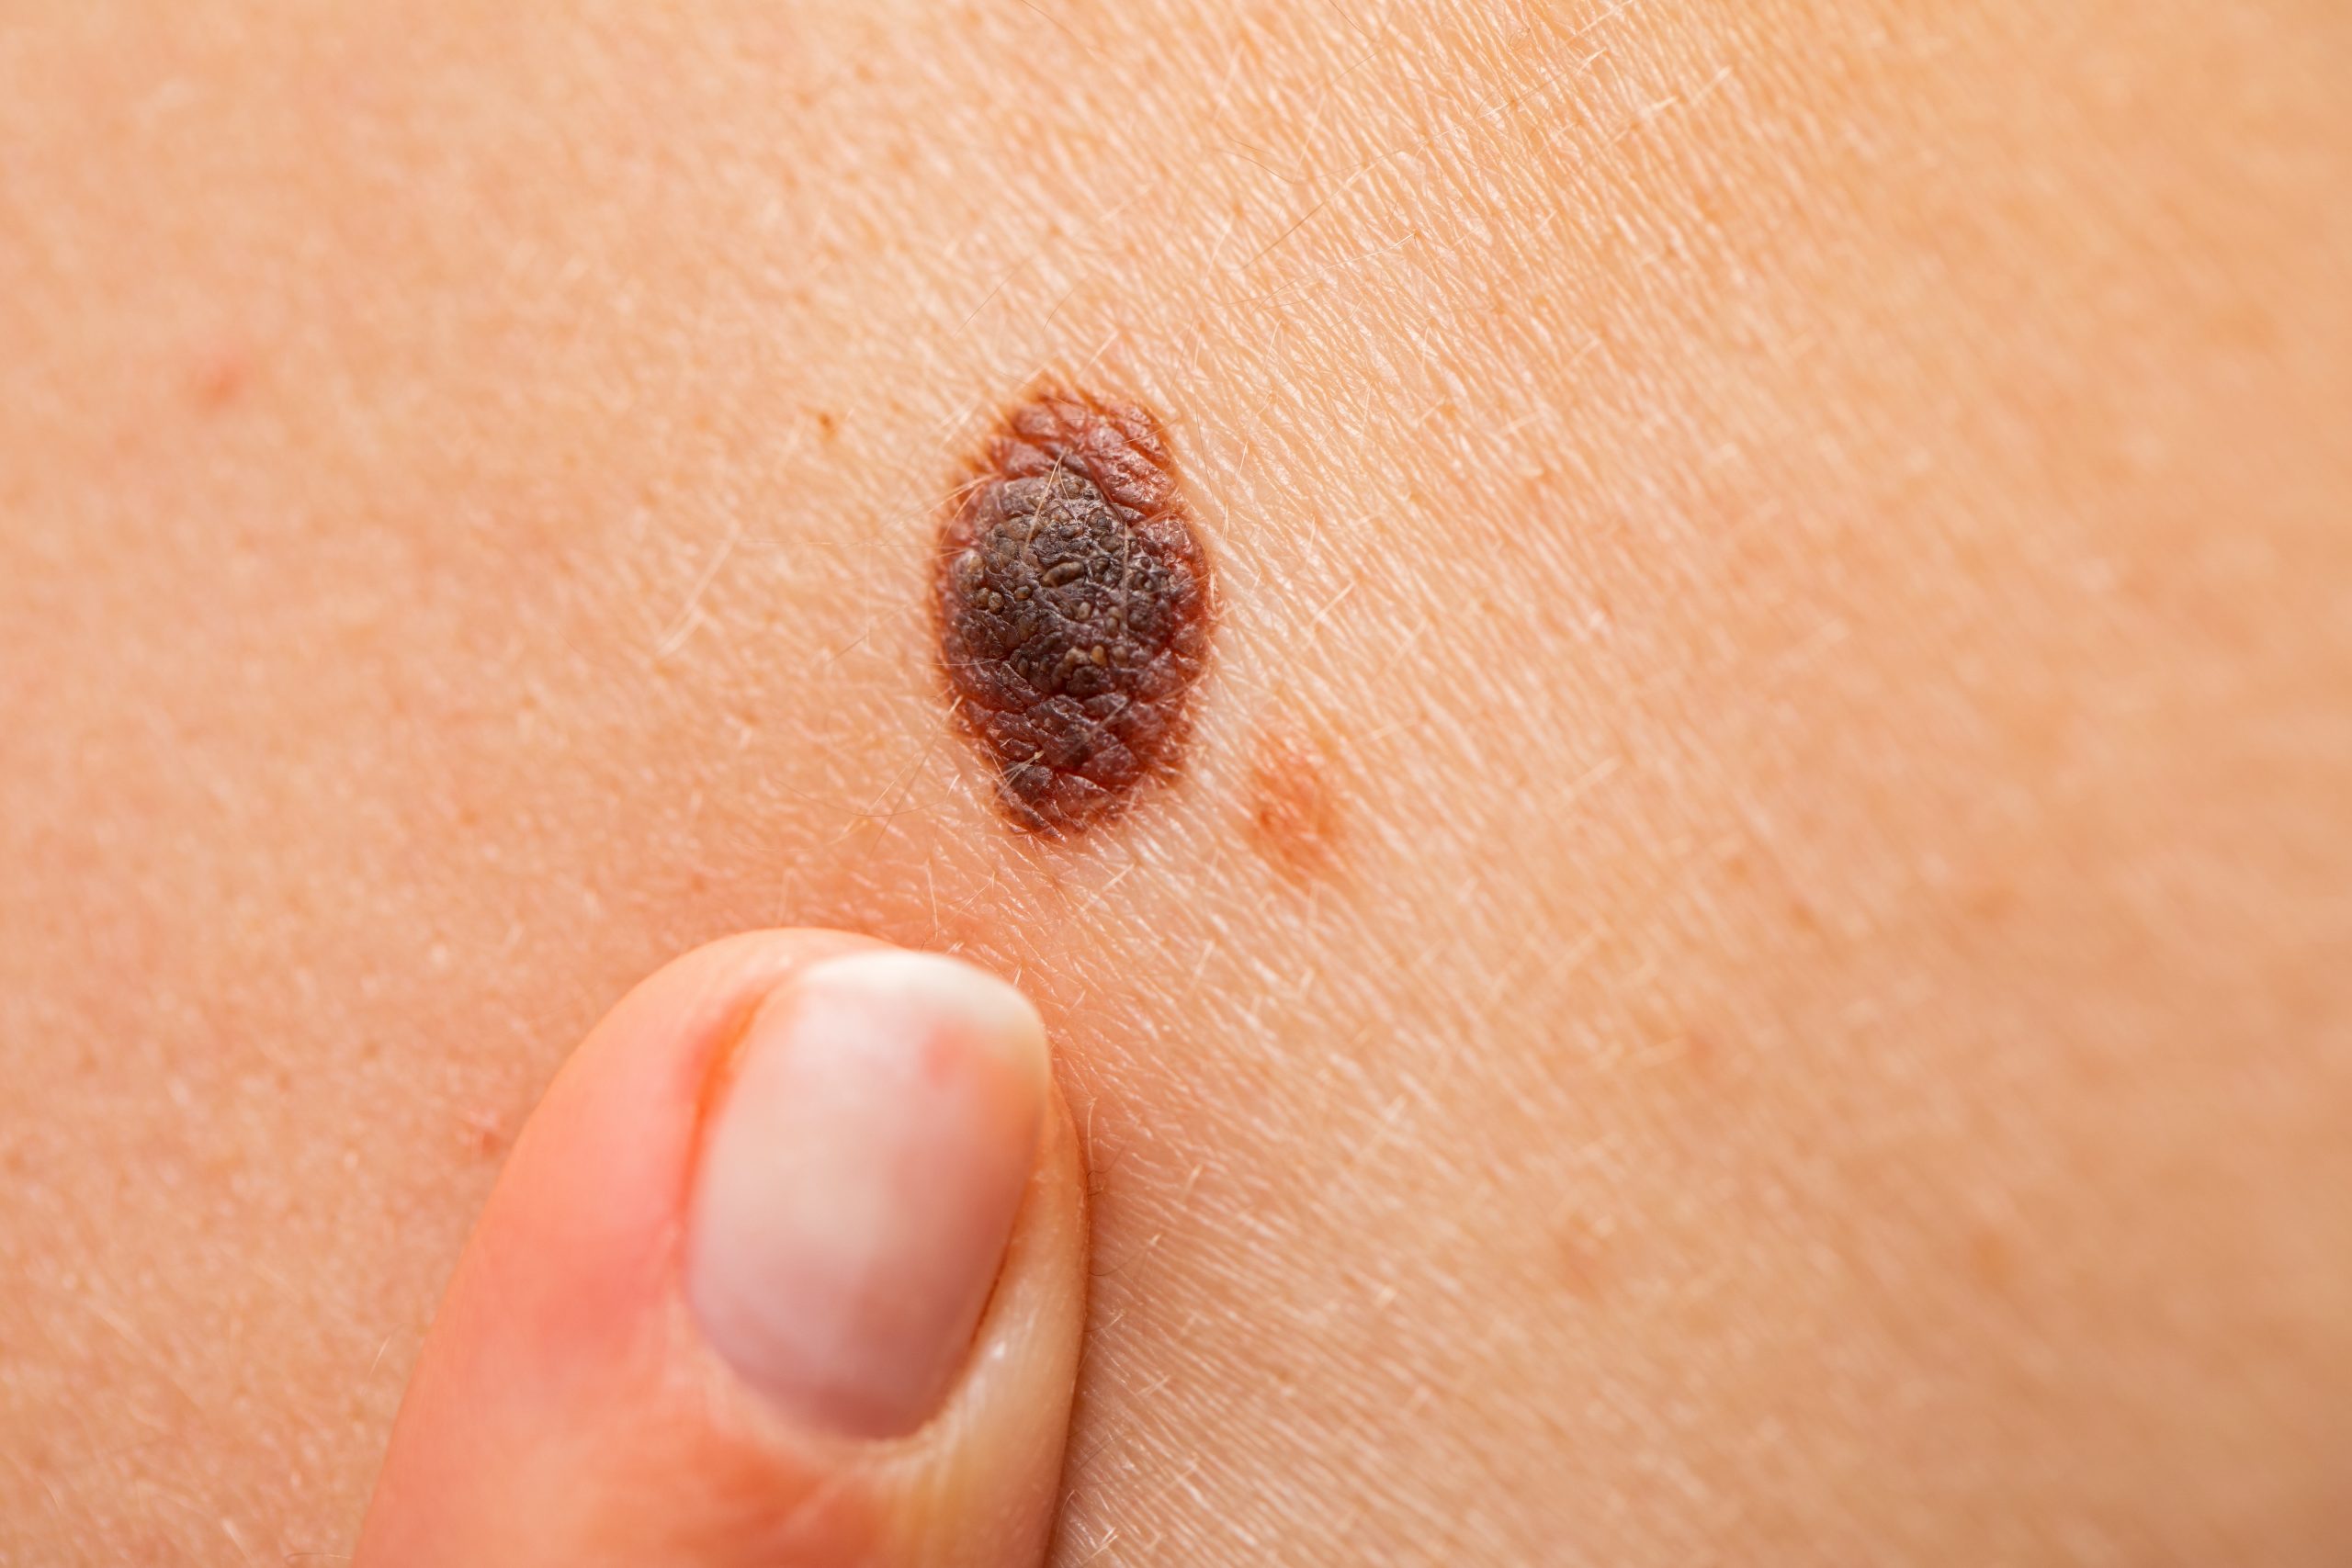 Dangerous nevus on skin – melanoma